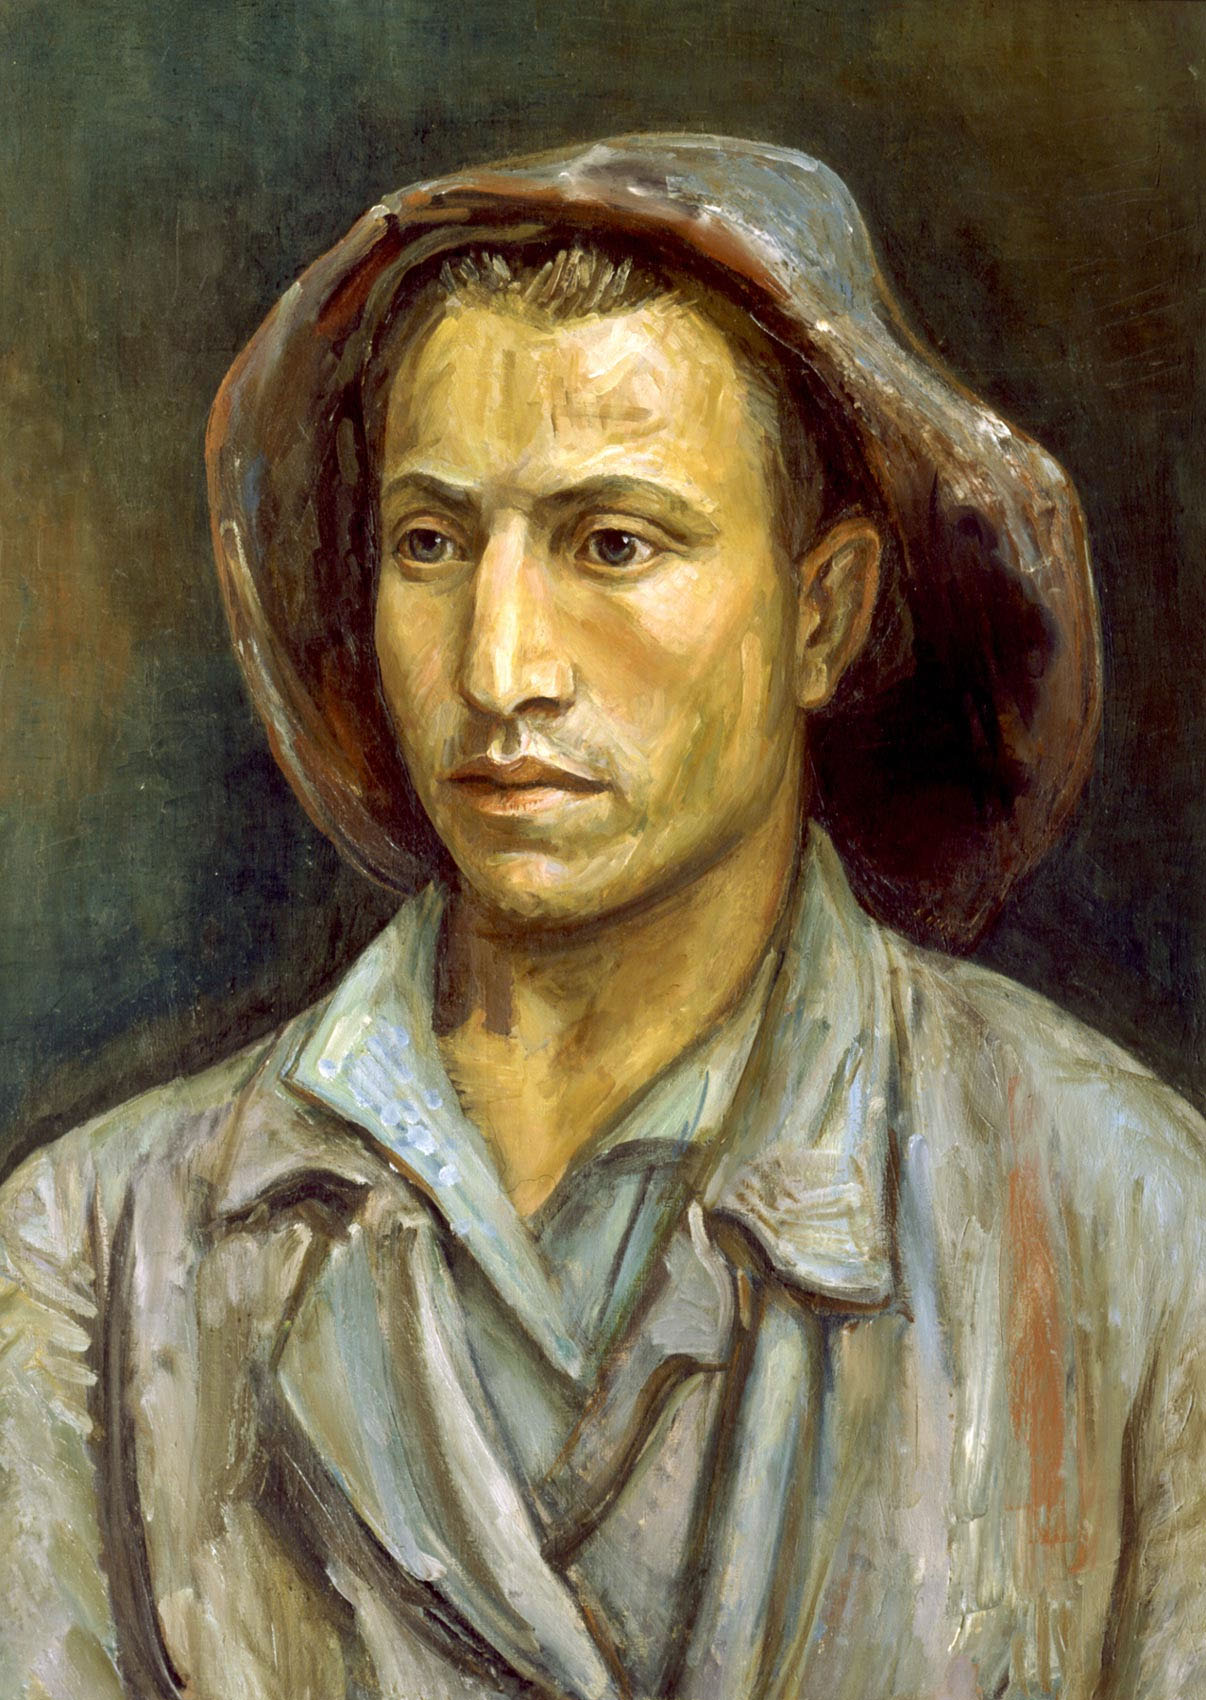 Осолодков. Портрет горняка. 1933-1934